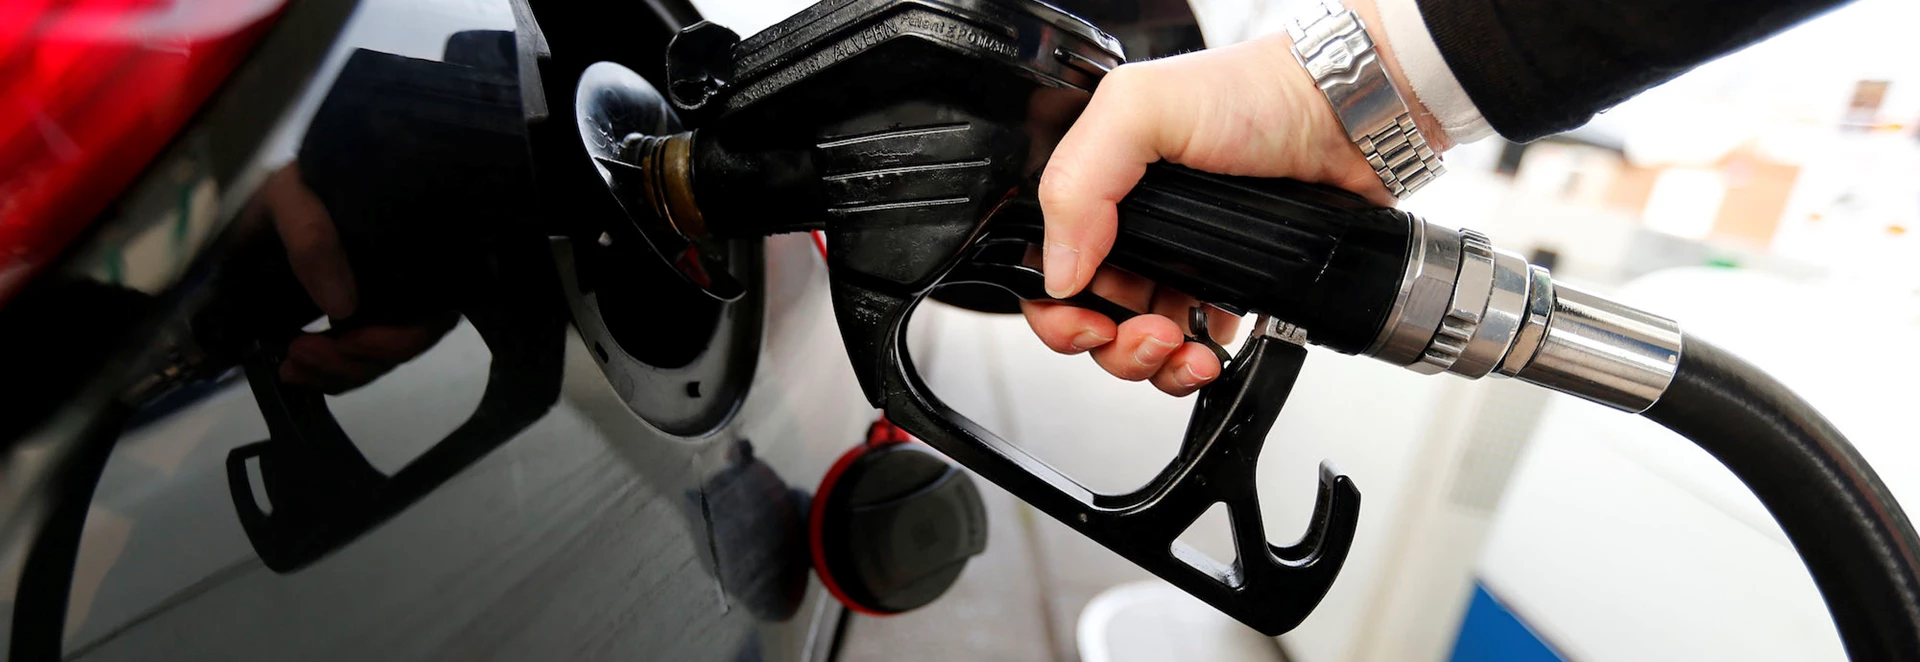 Diesel fuel consumed twice as much as petrol in 2016